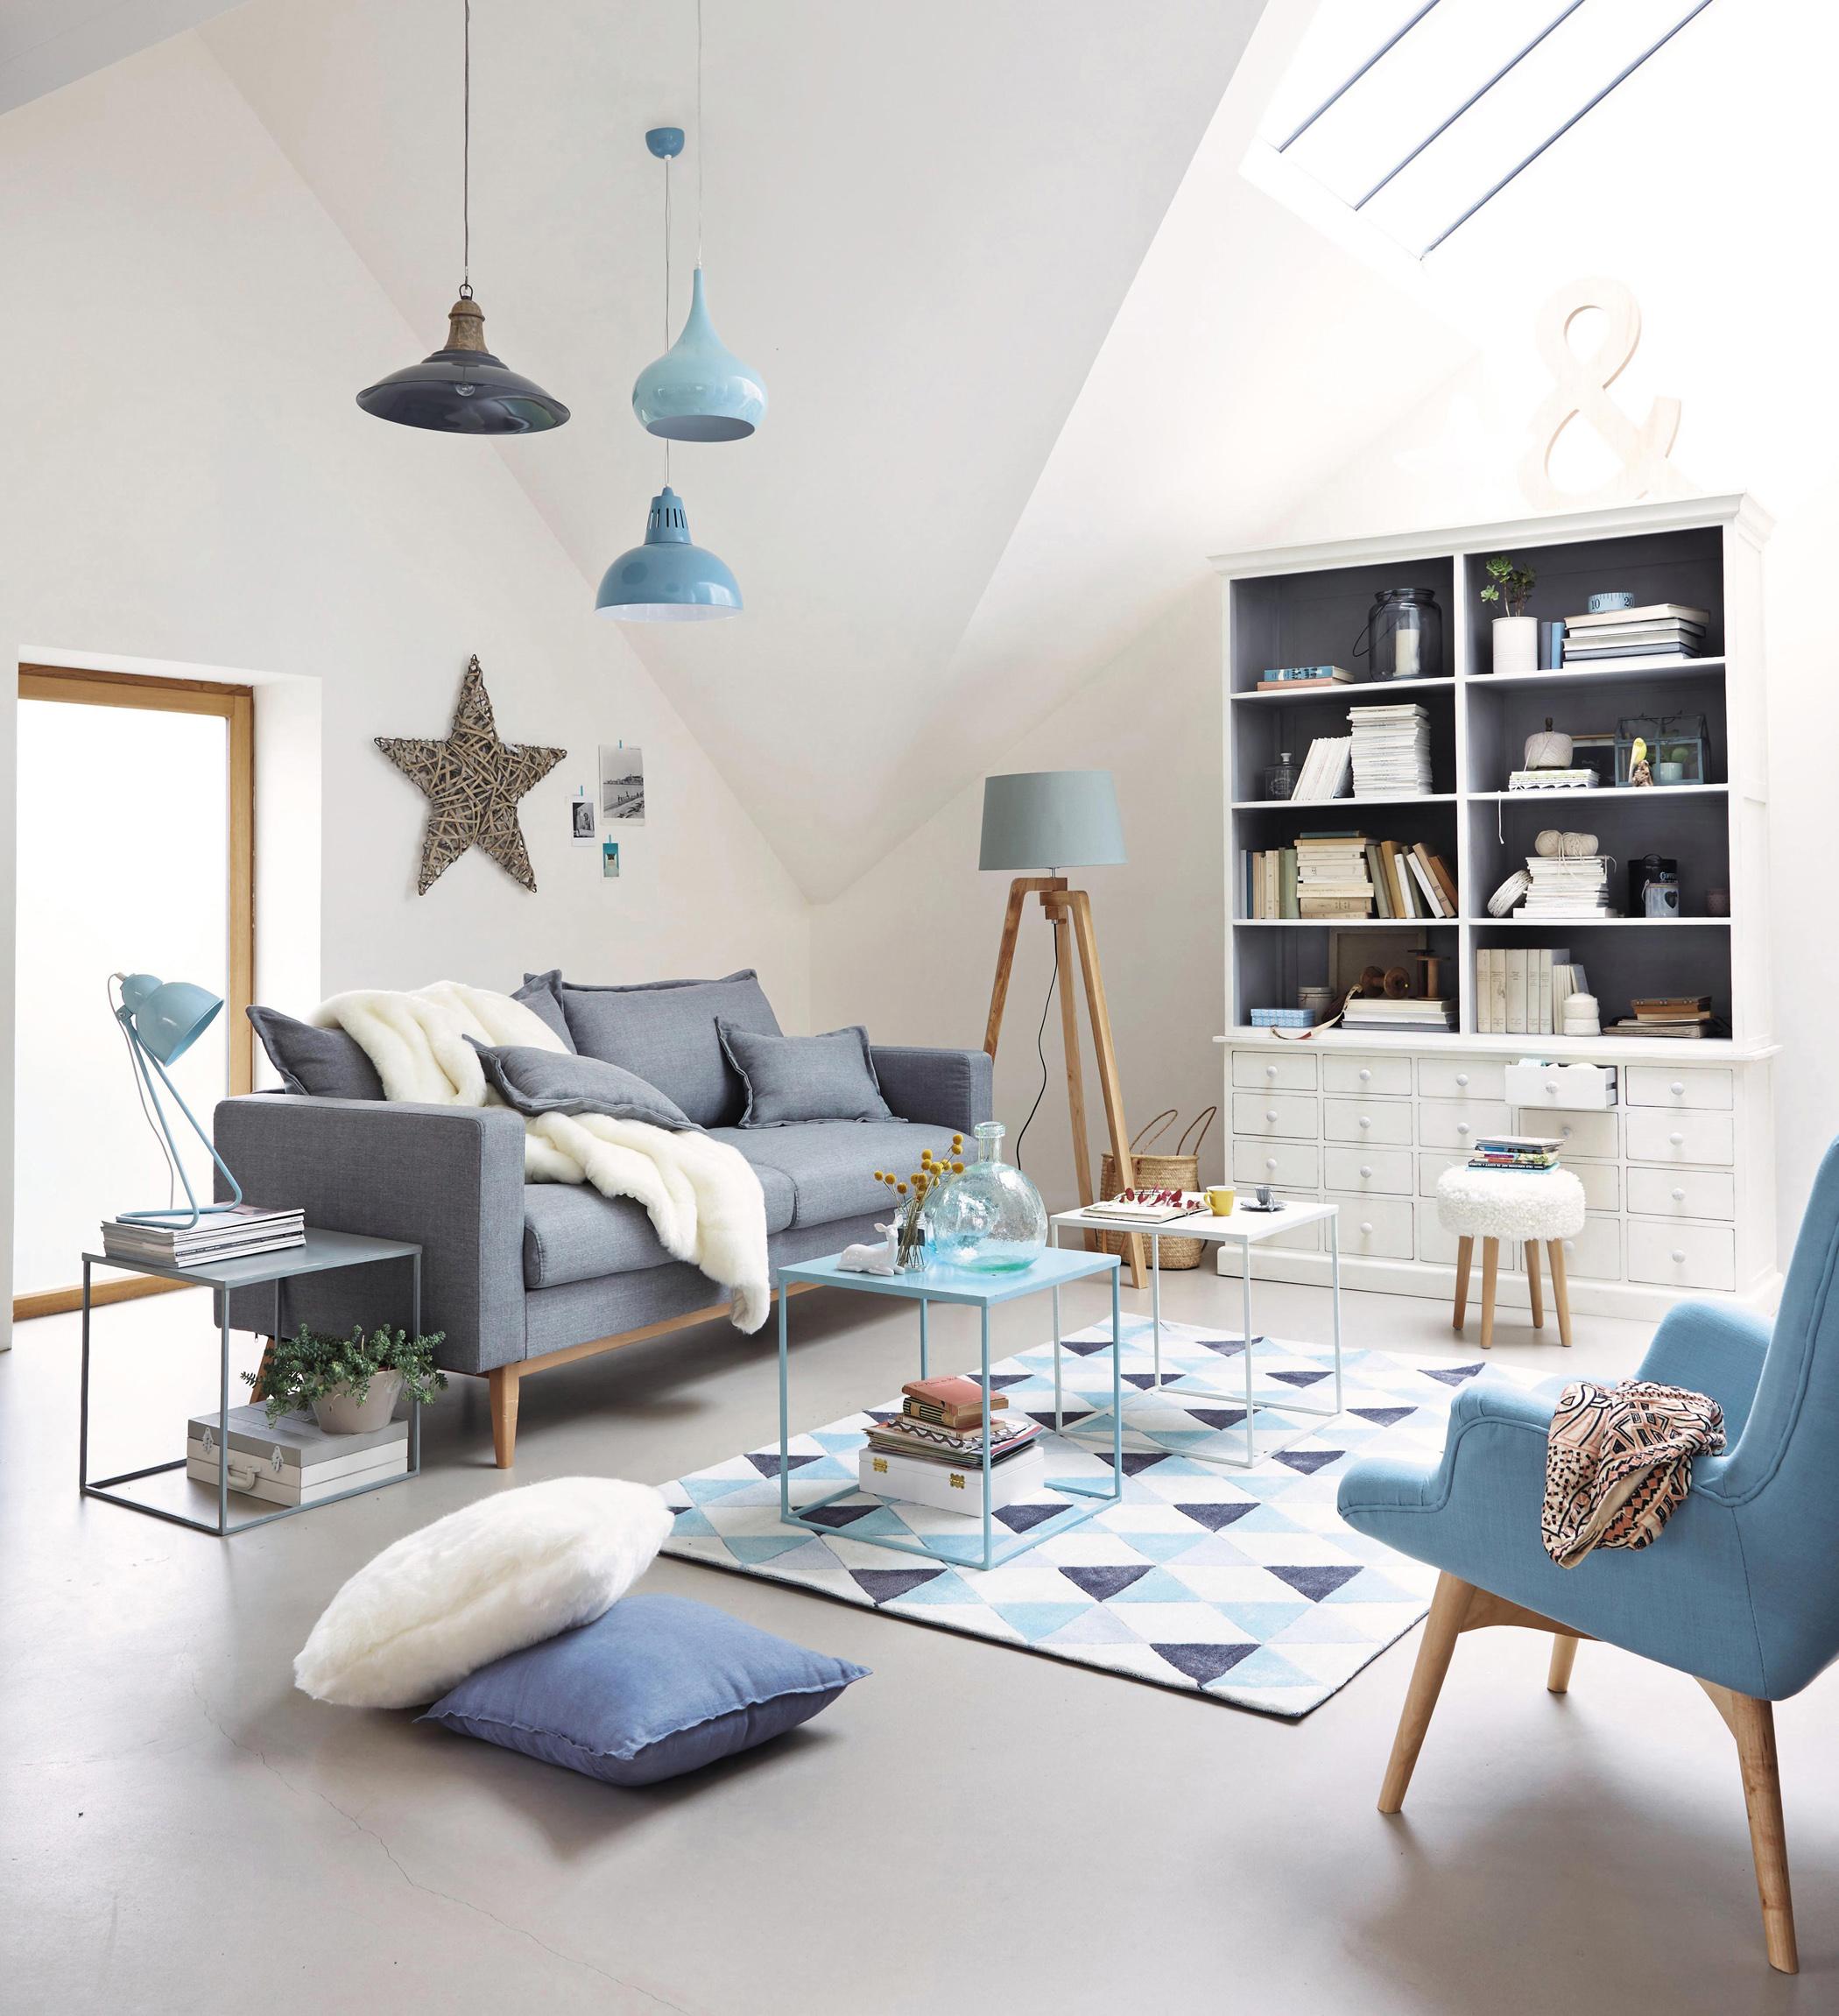 Wohnzimmer in Blau-Grau #couchtisch #beistelltisch #teppich #sessel #stehlampe #schrank #sofa #wanddeko #blauessofa #weißercouchtisch #holzstehlampe ©Maisons du Monde